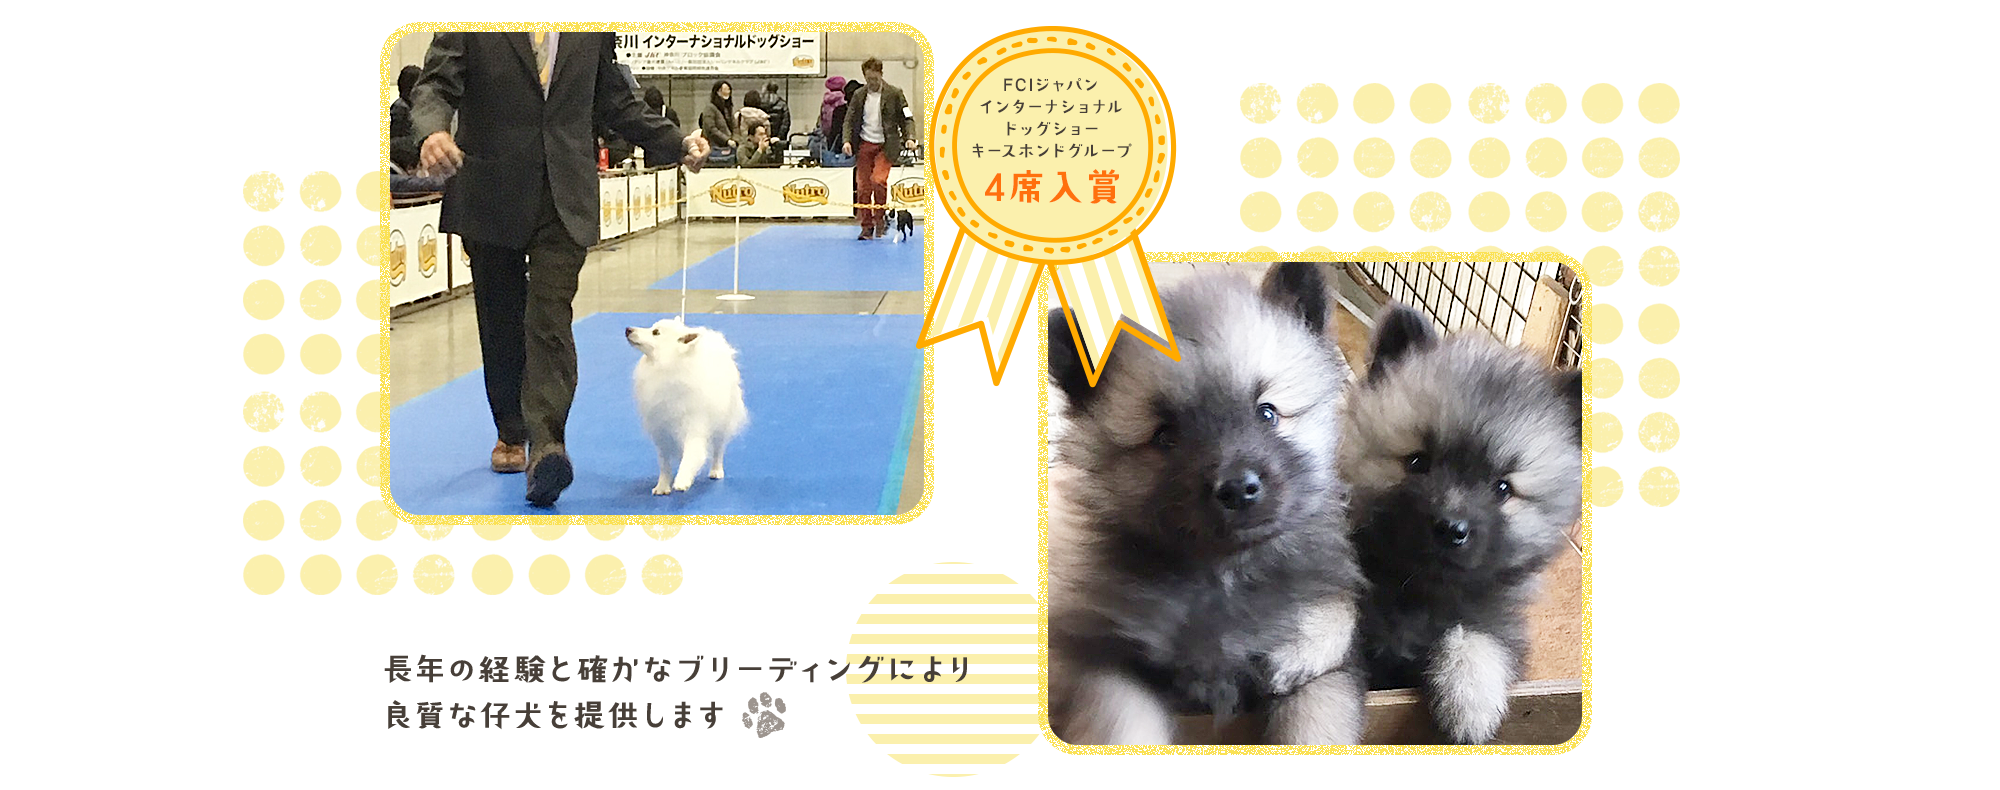 一般社団法人ジャパンケネルクラブキースホンドブリーダー  FCIジャパンインターナショナルドッグショー　キースホンドグループ4席入賞  長年の経験と確かなブリーディングにより良質な仔犬を提供します